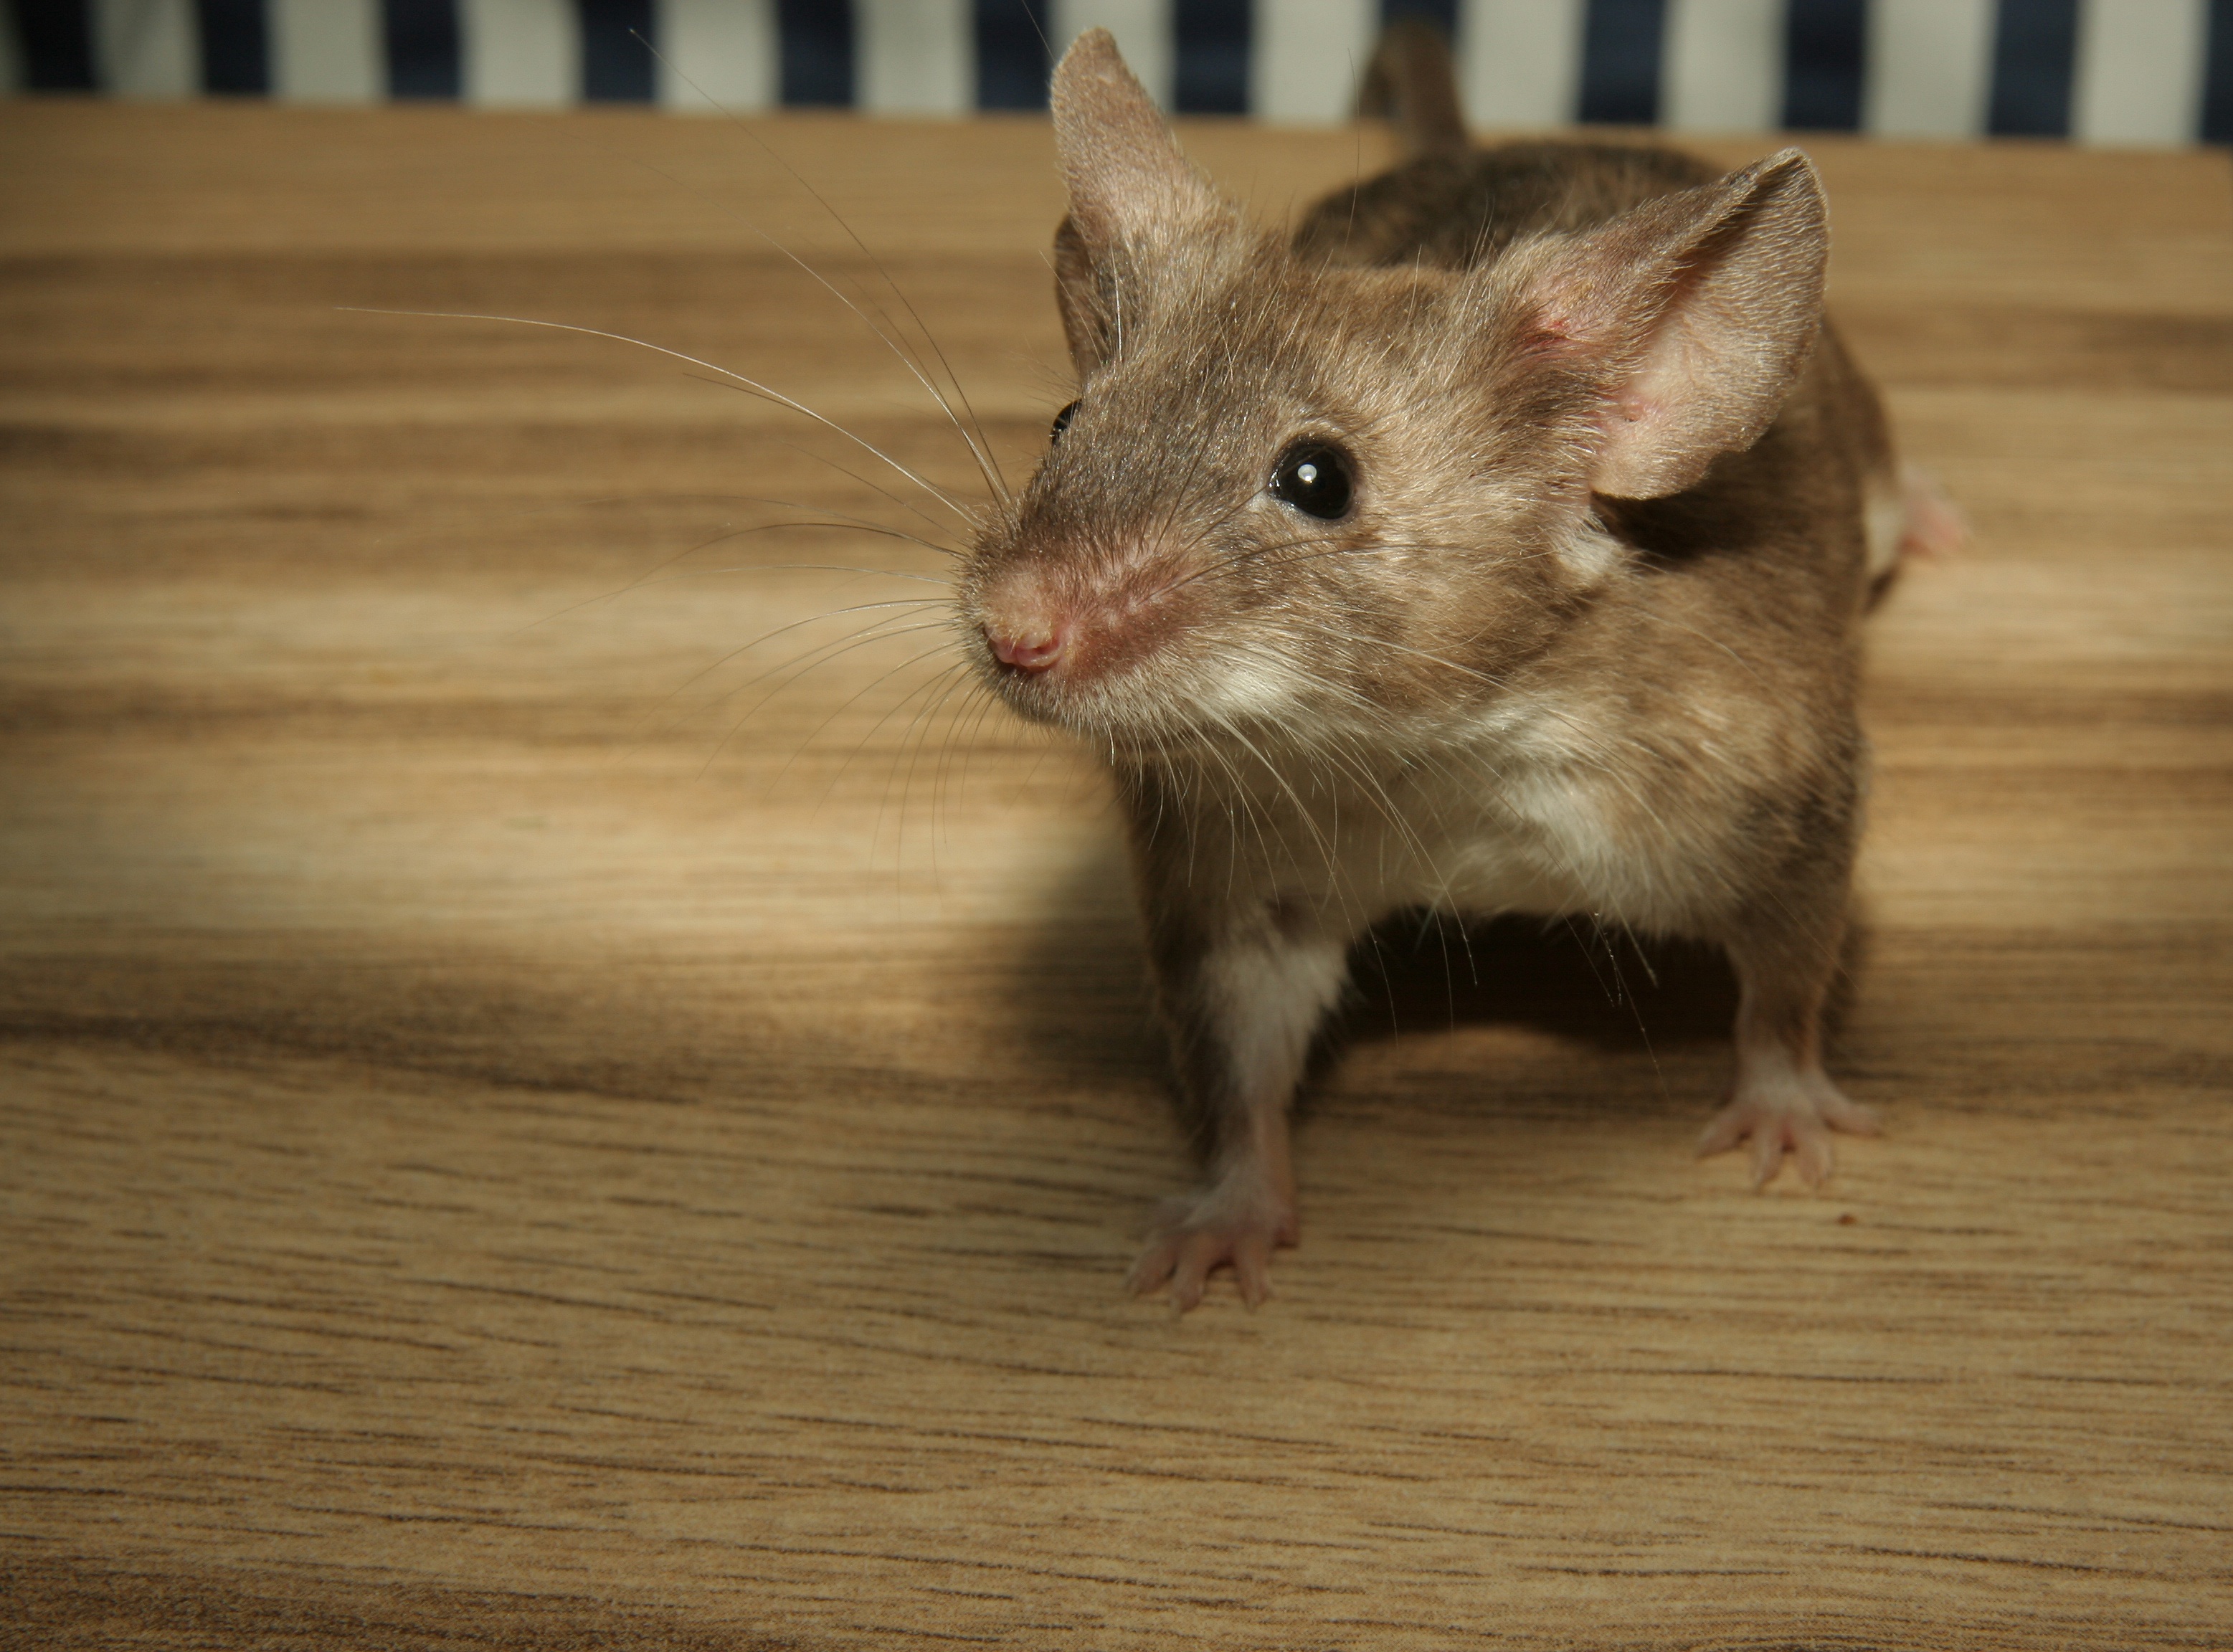 Sikerült szűznemzésre bírni egy egeret, igaz, alaposan meg kellett hozzá bütykölni a genetikai állományát